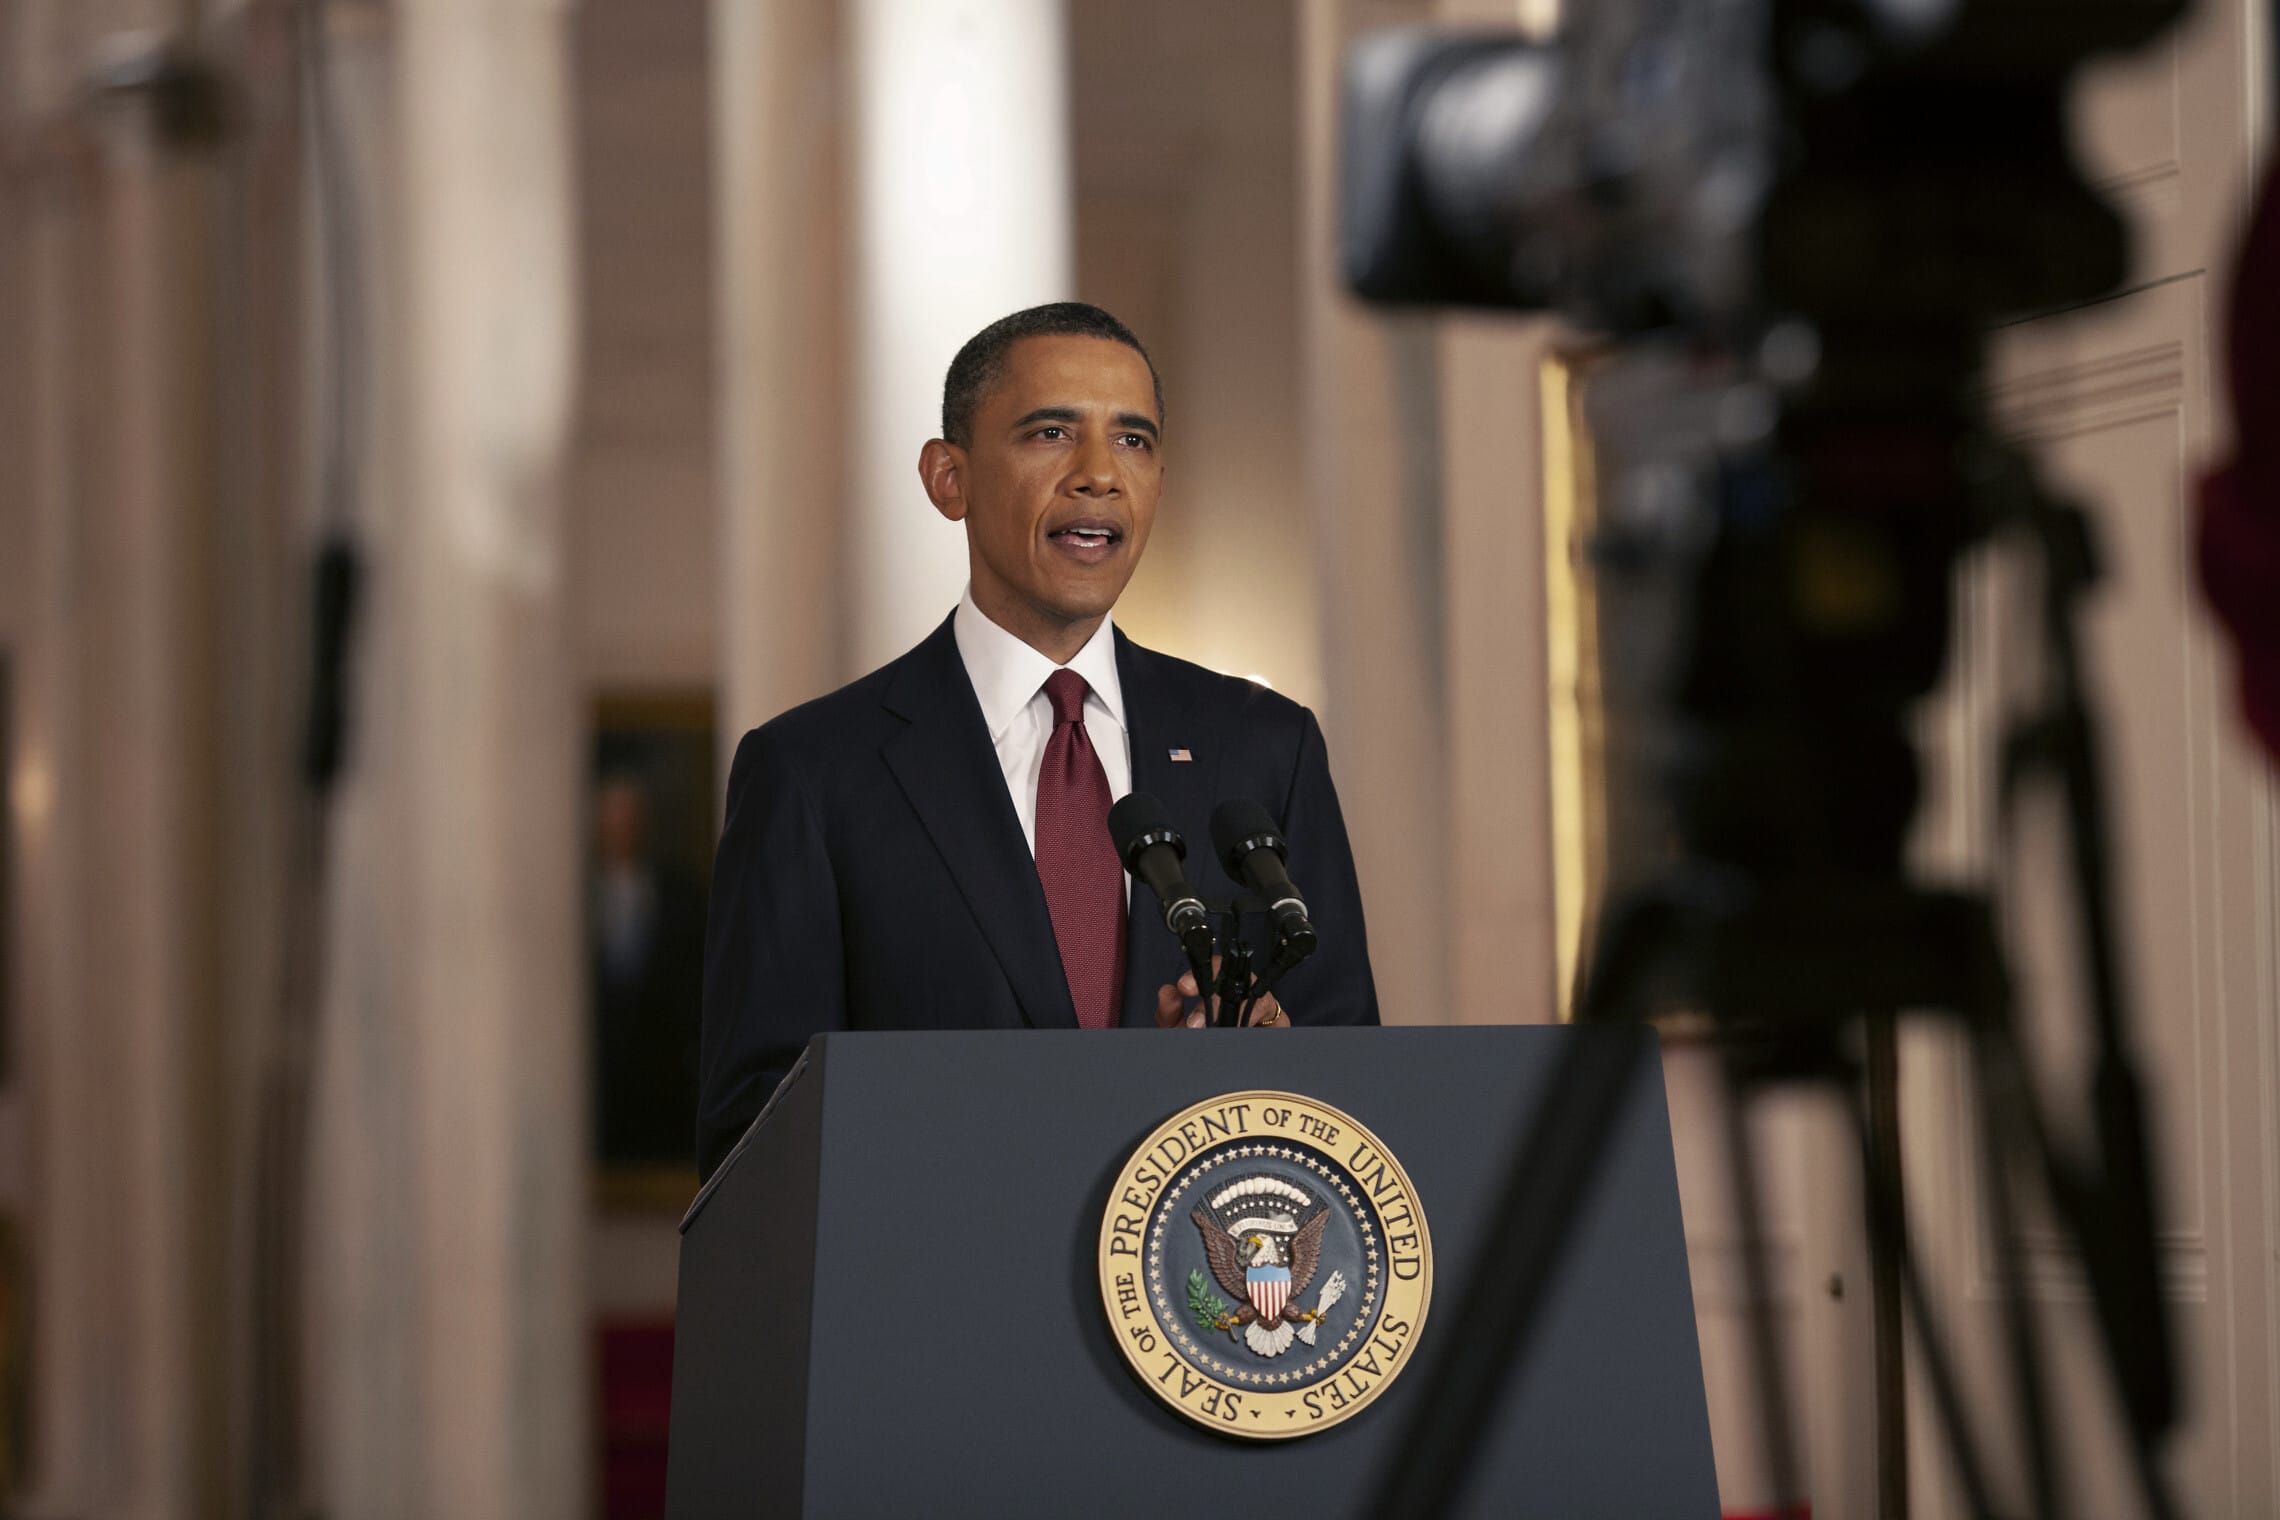 אובמה מכריז בשידור חי מהבית הלבן על חיסולו של אוסמה בן לאדן, 1 במאי 2011 (צילום: Official White House Photo by Pete Souza)